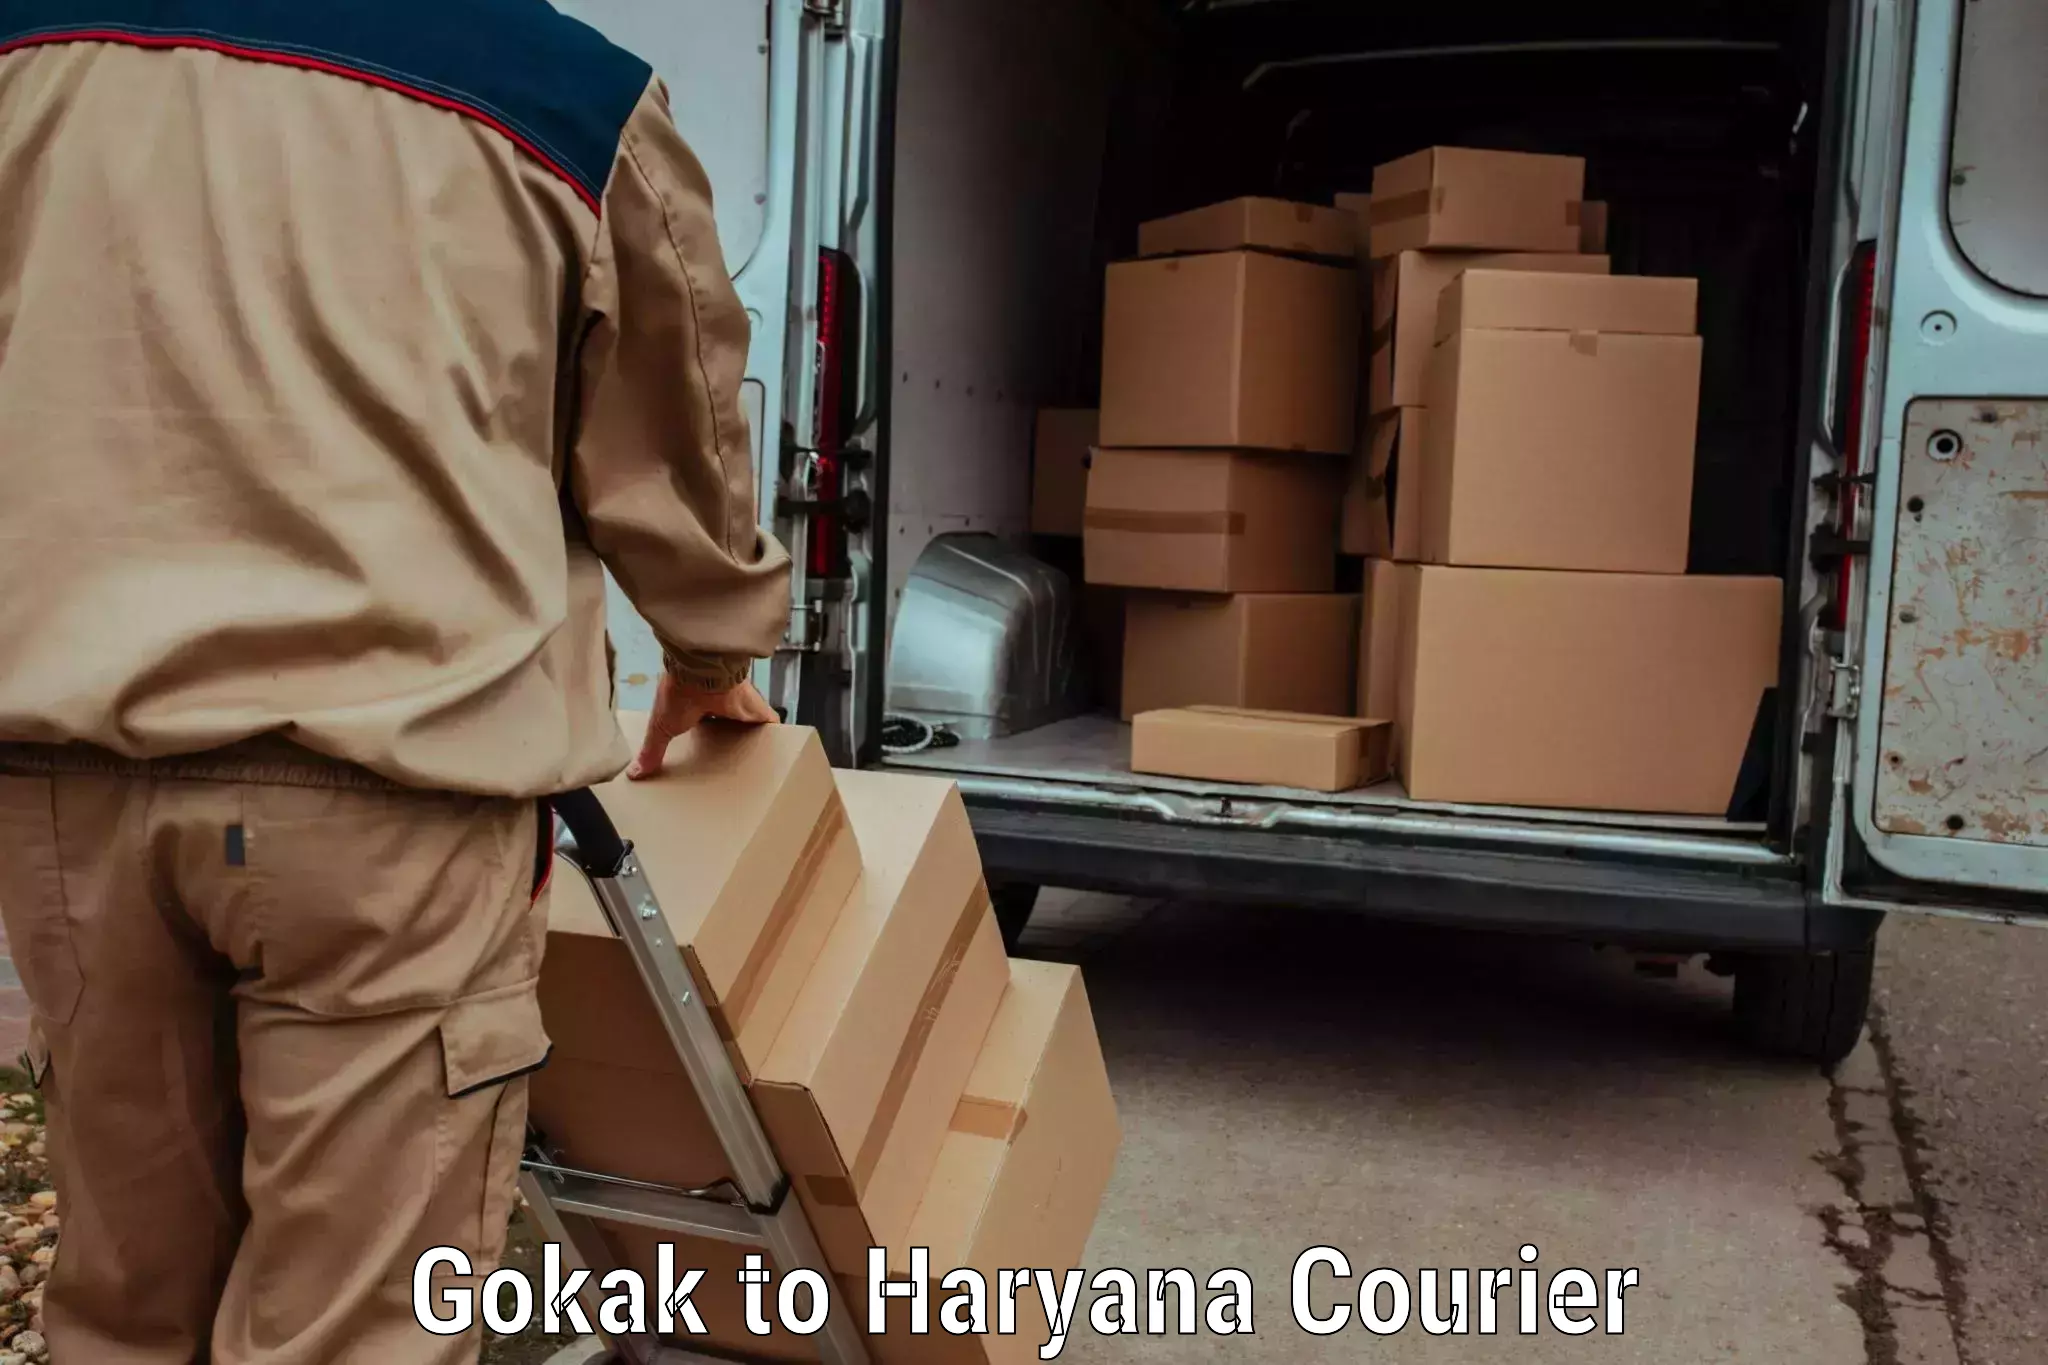 Parcel service for businesses Gokak to Hansi